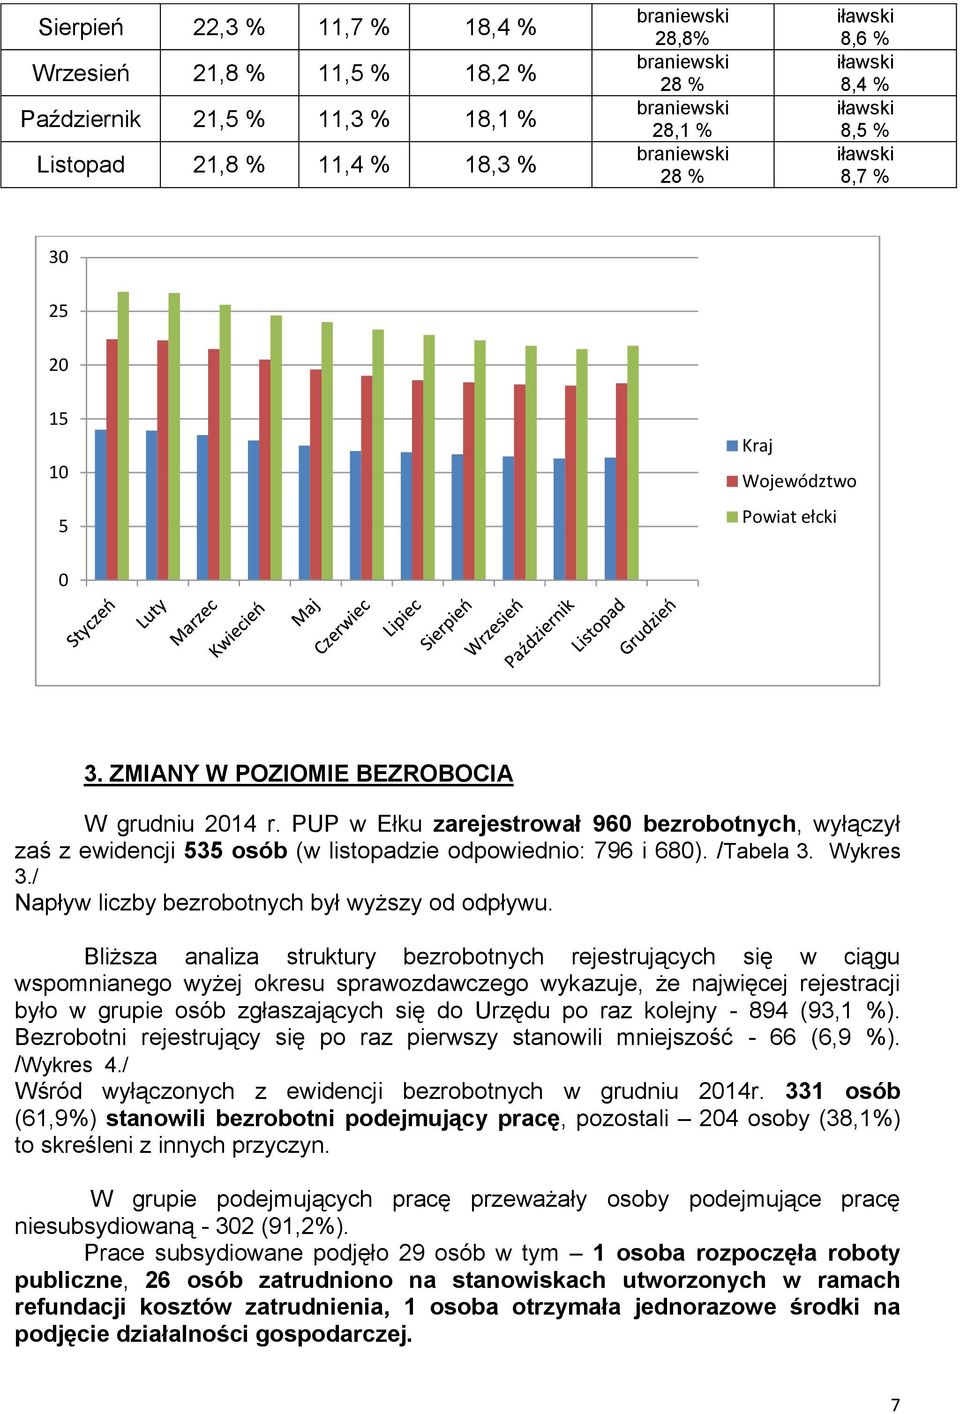 PUP w Ełku zarejestrował 960 bezrobotnych, wyłączył zaś z ewidencji 535 osób (w listopadzie odpowiednio: 796 i 680). /Tabela 3. Wykres 3./ Napływ liczby bezrobotnych był wyższy od odpływu.